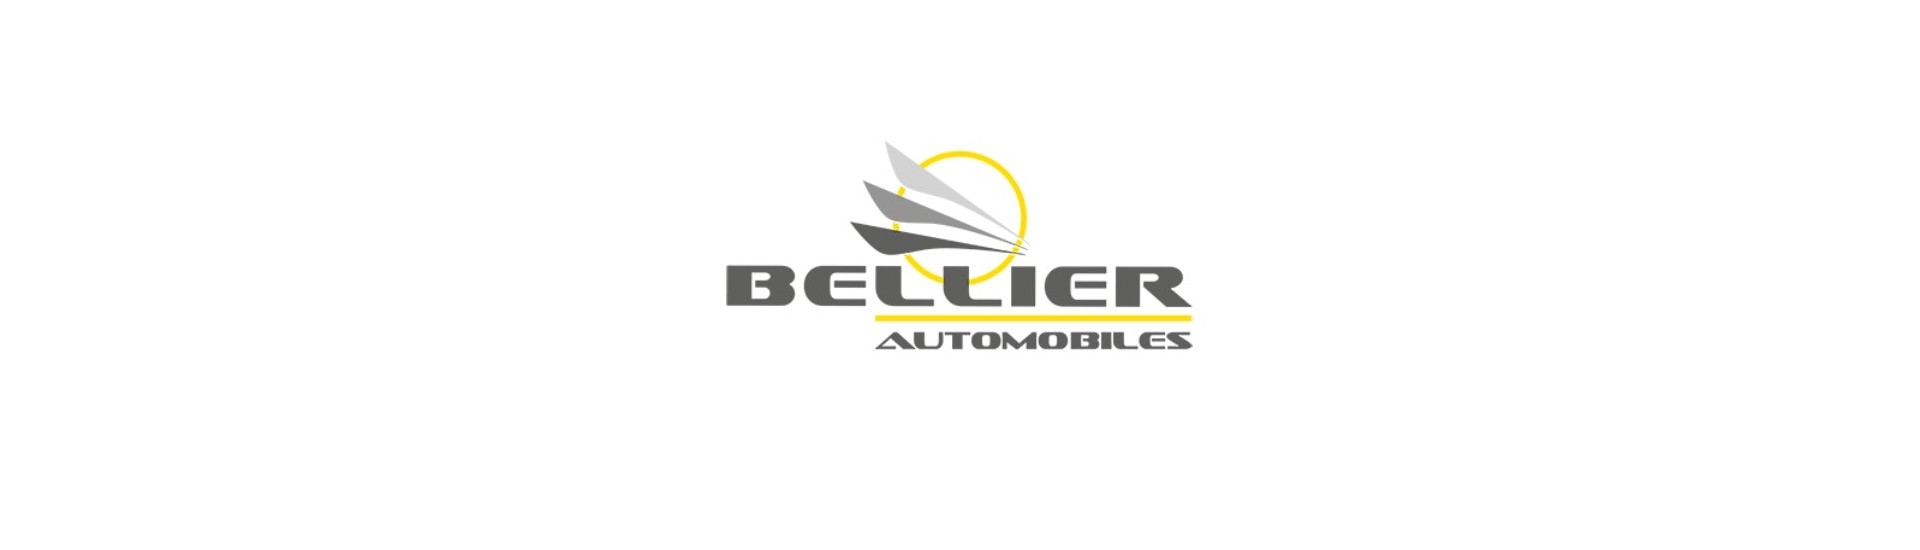 Flexibel avgas till bästa pris för bil utan tillstånd Bellier